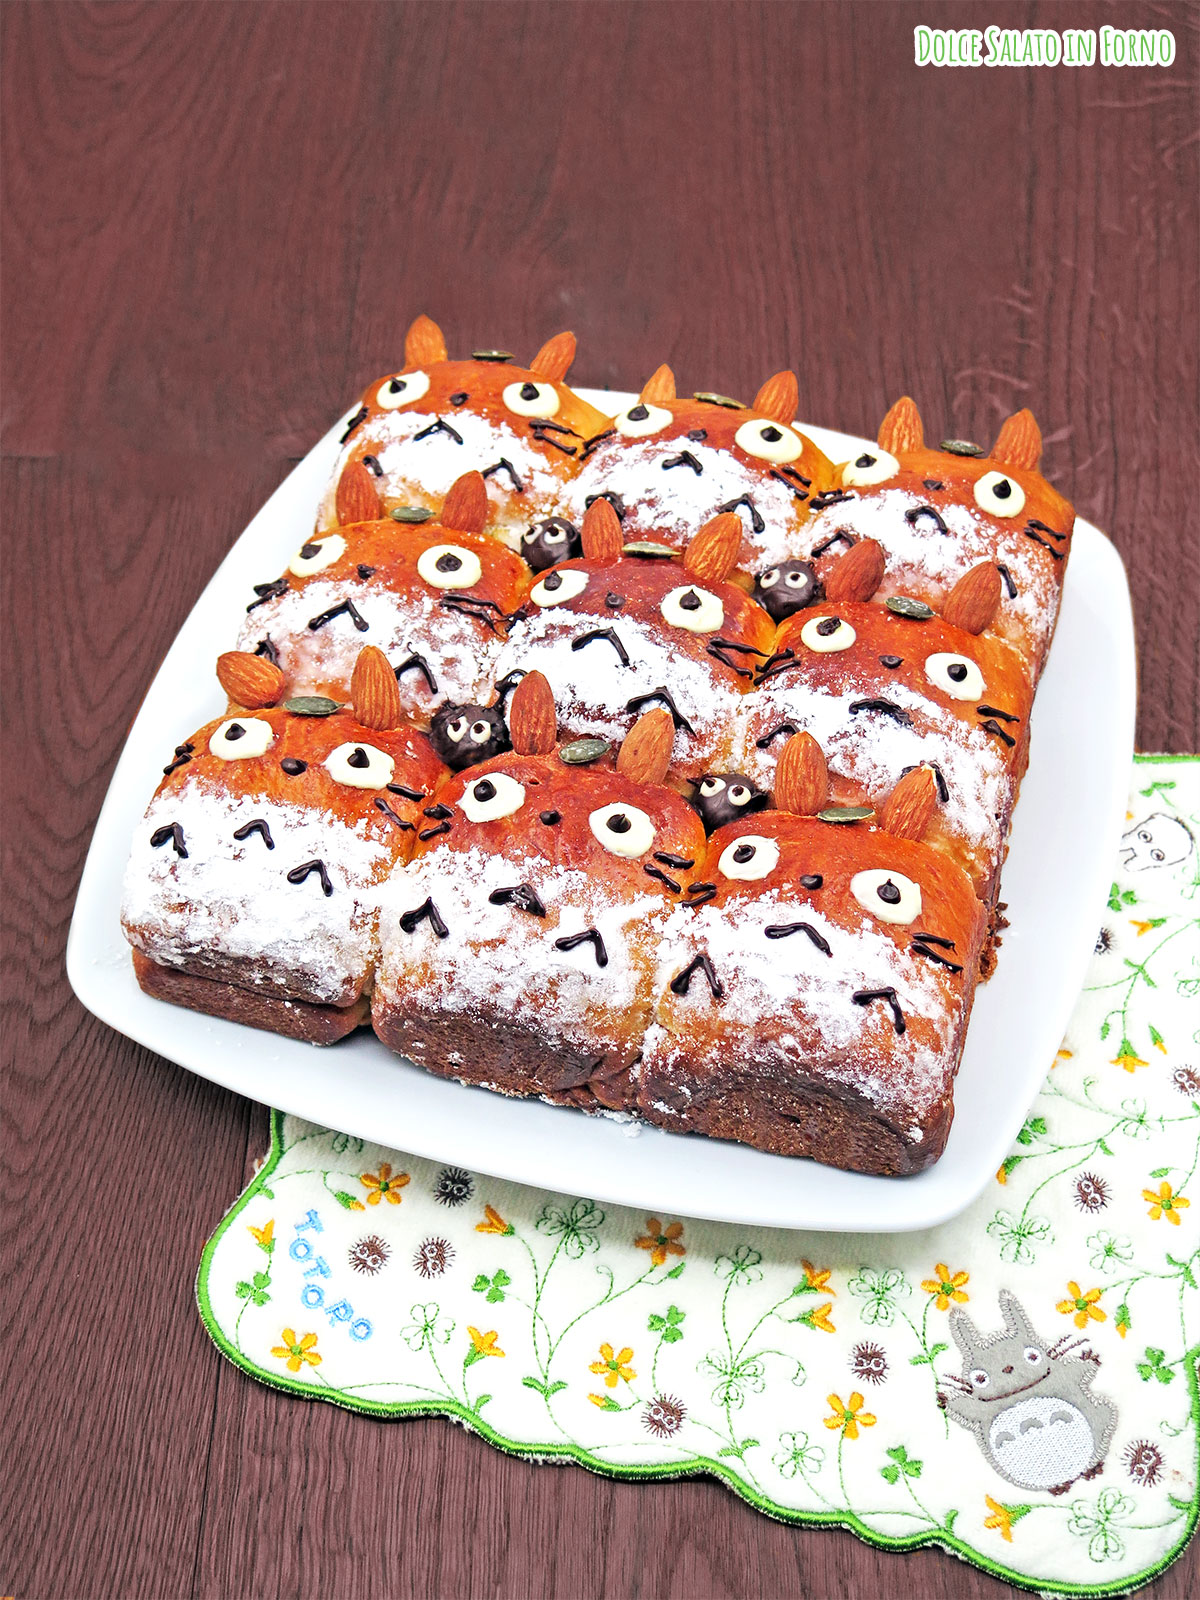 Studio Ghibli: ricette, torte e dolci a tema - Pagina 3 di 3 - Dolce Salato  in Forno